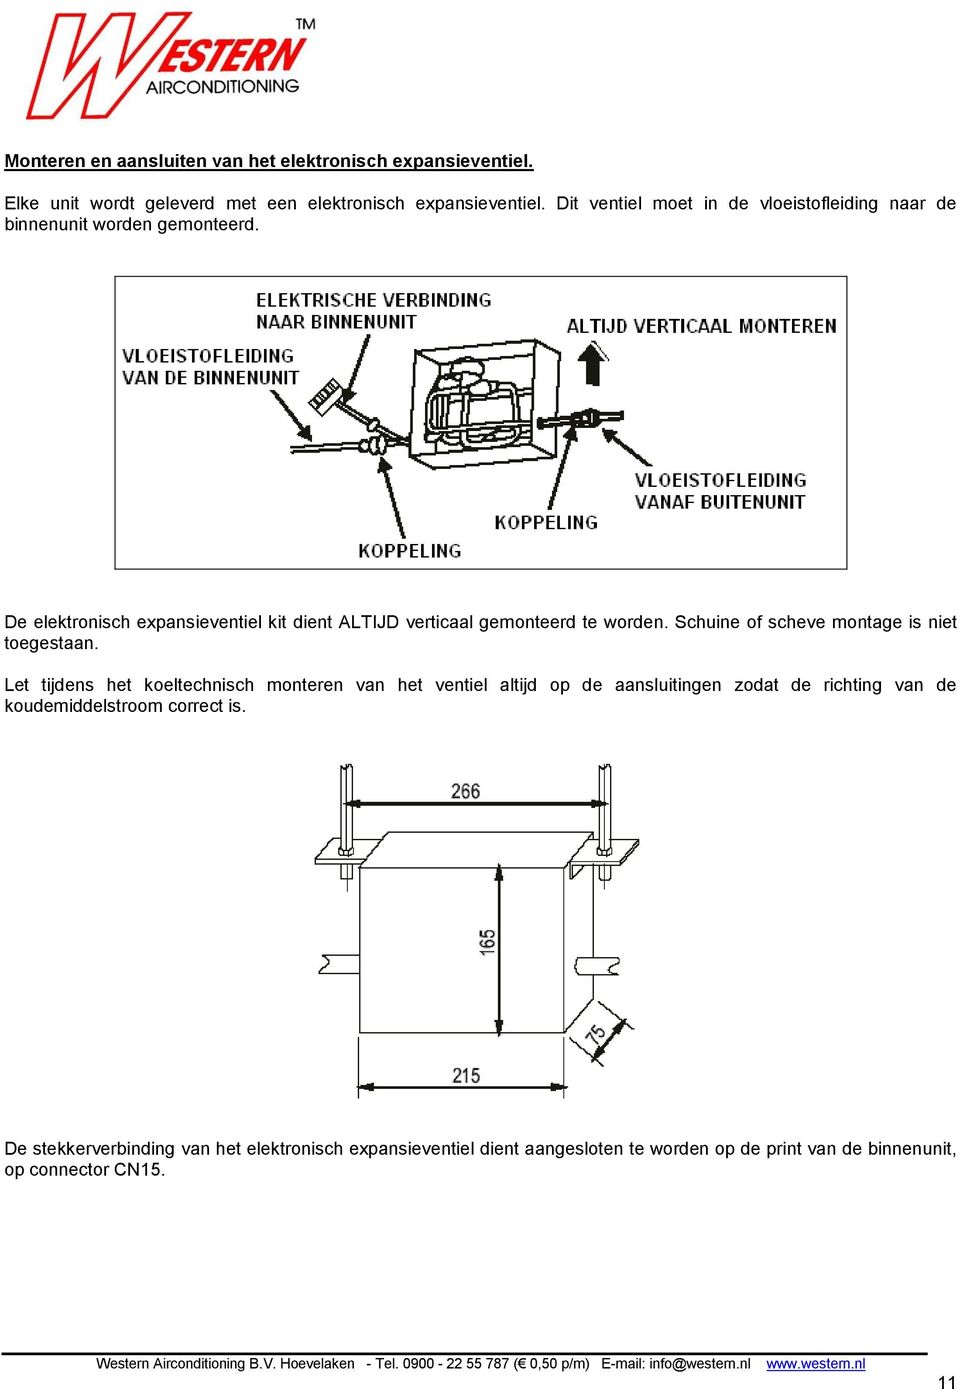 De elektronisch expansieventiel kit dient ALTIJD verticaal gemonteerd te worden. Schuine of scheve montage is niet toegestaan.